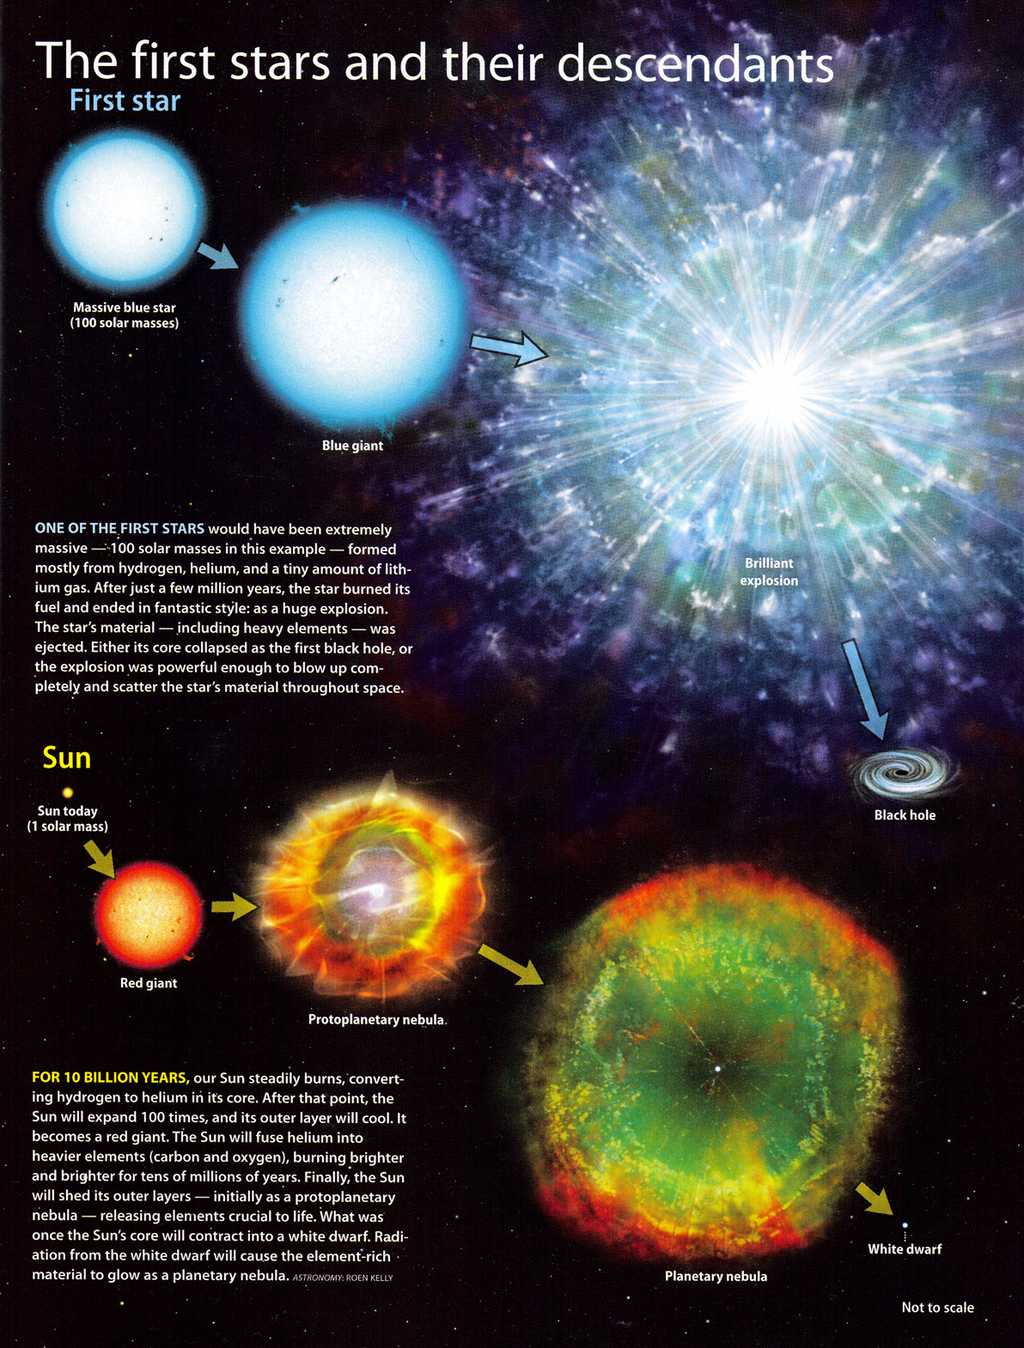 Evolution comparée classique d'une étoile massive de première génération, dite encore de population III, avec en bas celle du Soleil. Ces étoiles de population III sont très massives et brillent pendant quelques millions d'années tout au plus. Crédit : John D. Johnson